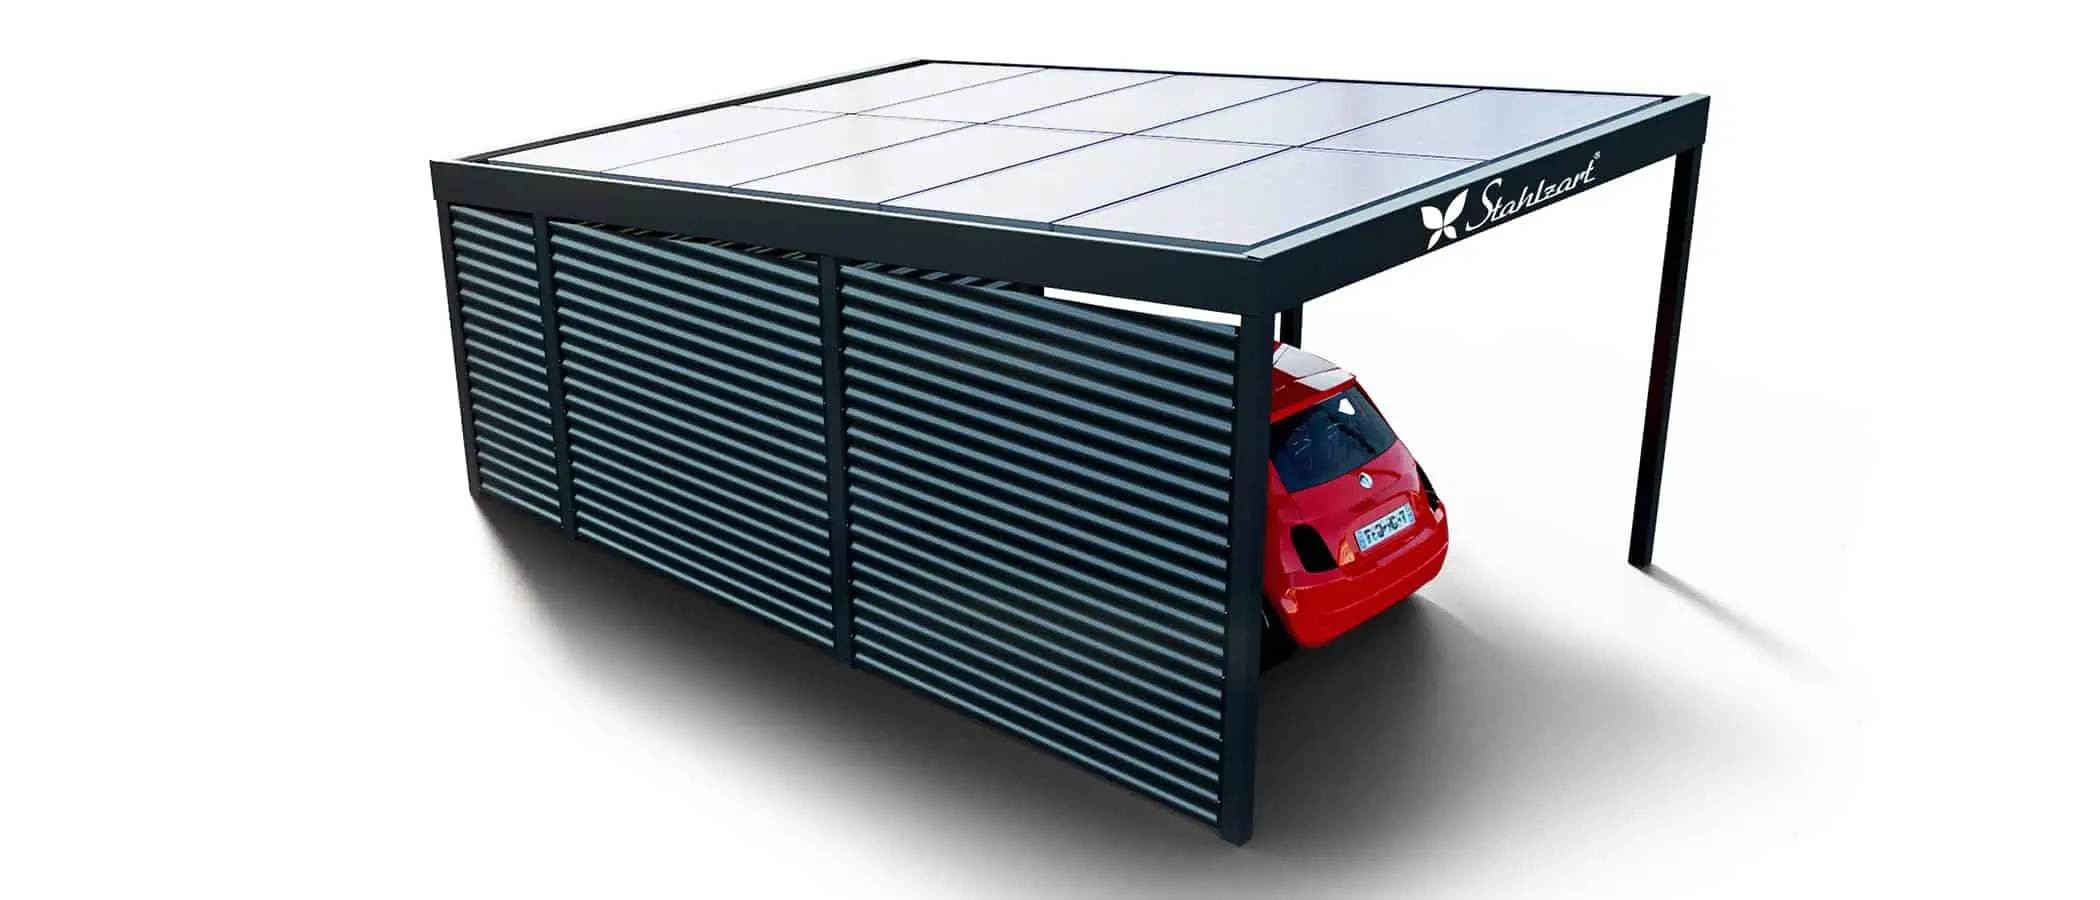 solar-carport-mit-pultdach-carports-solarcarport-pultdach-carportdach-design-strom-angebot-photovoltaikanlage-module-solardach-dachflaeche-metall-stahl-einzelcarport-mit-seitenwand-stahlzart